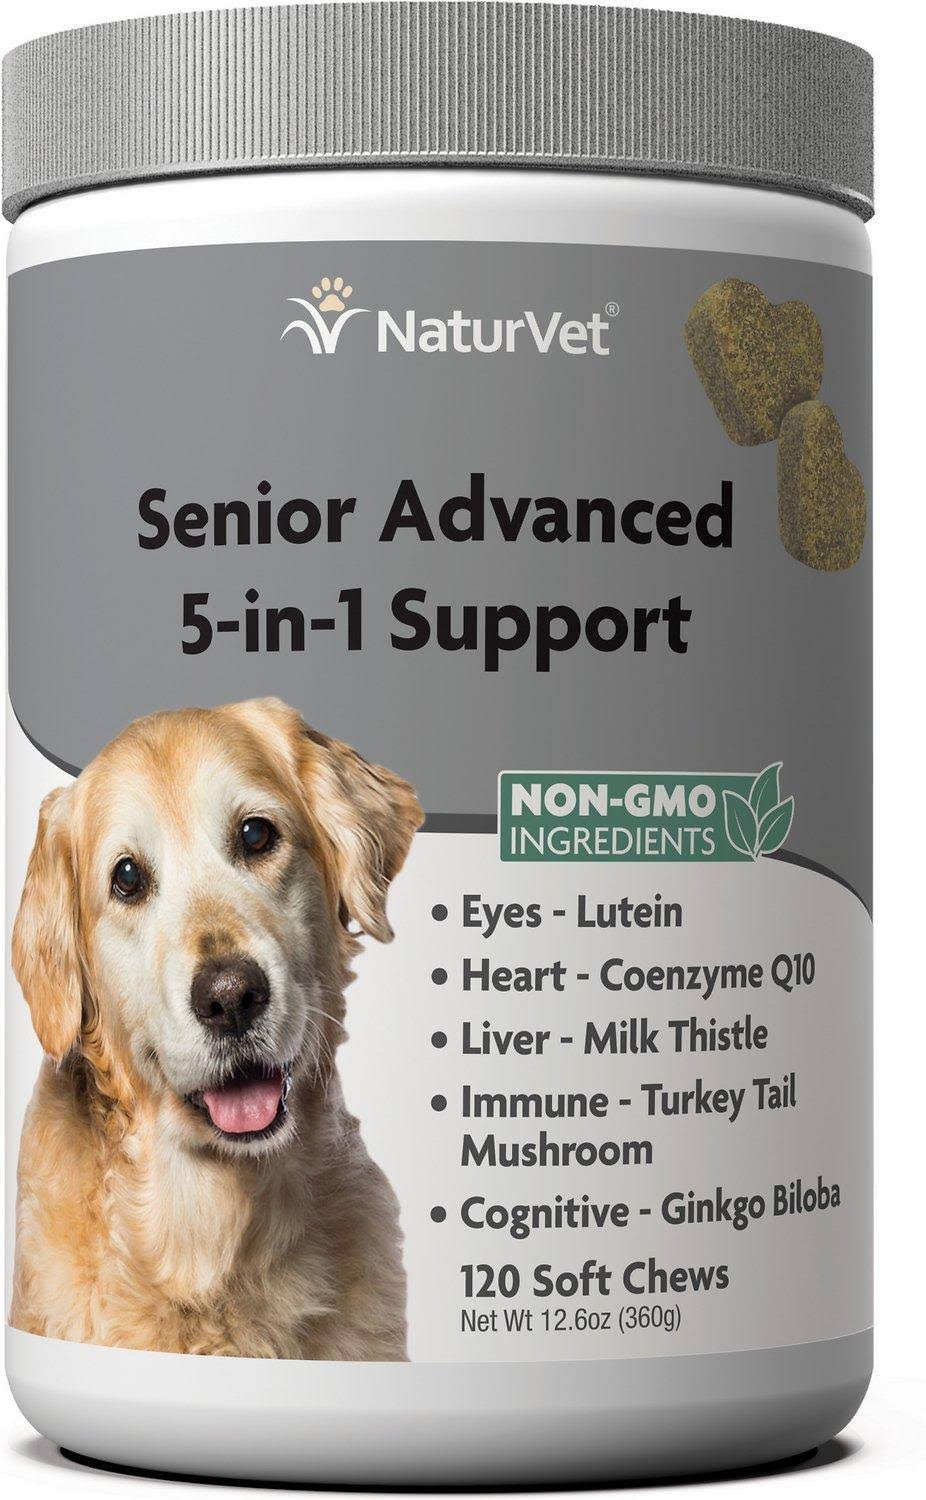 NaturVet Senior Advanced 5-in-1 Support 120 Soft Chews 12.6 oz (360 g)